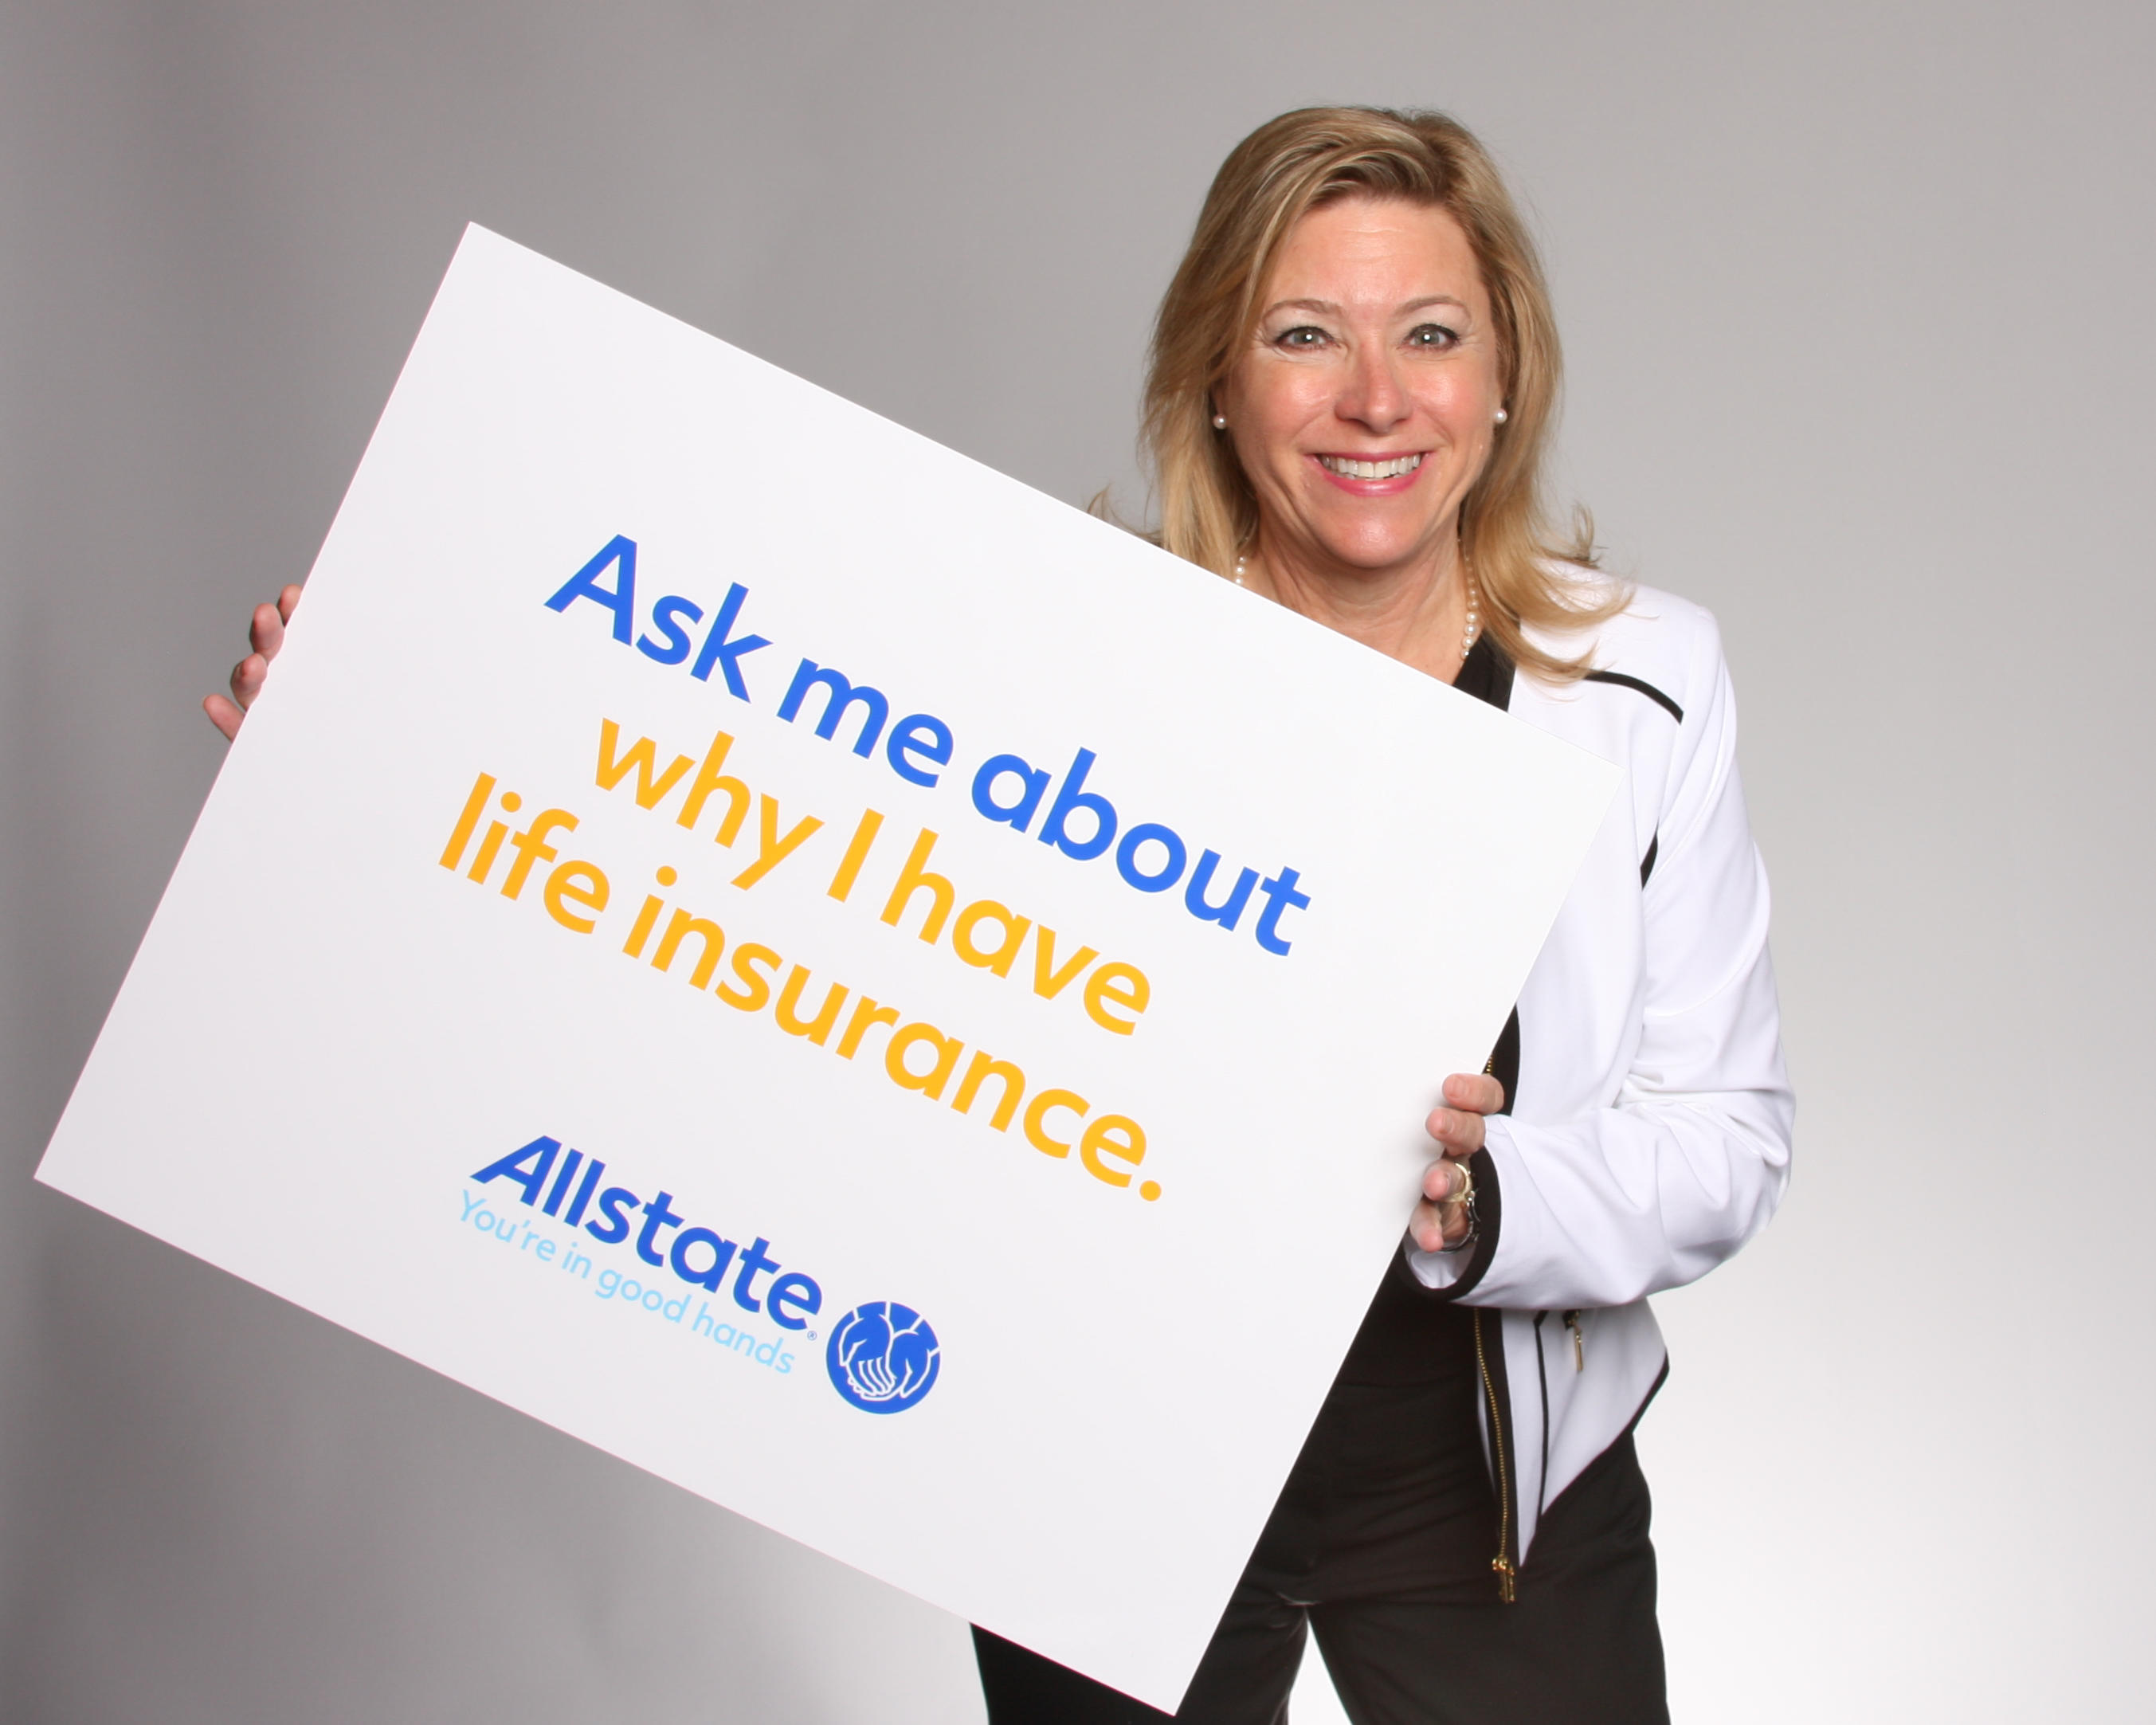 Gloria Alvord: Allstate Insurance Photo